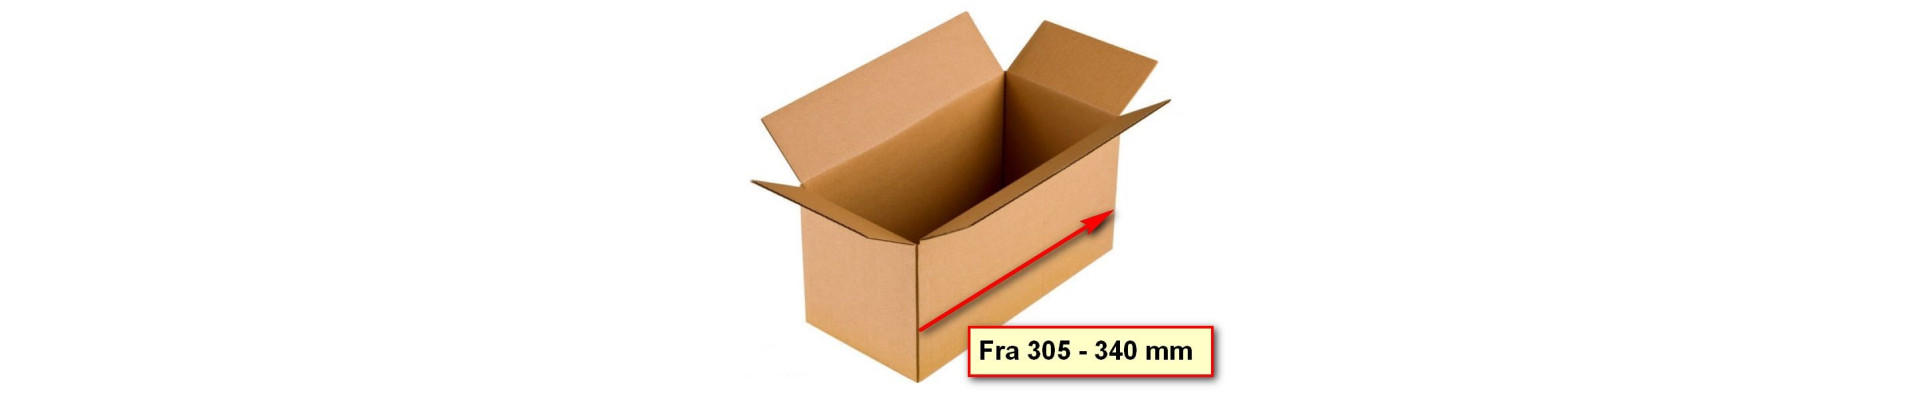 Kasser fra 305 - 340 mm